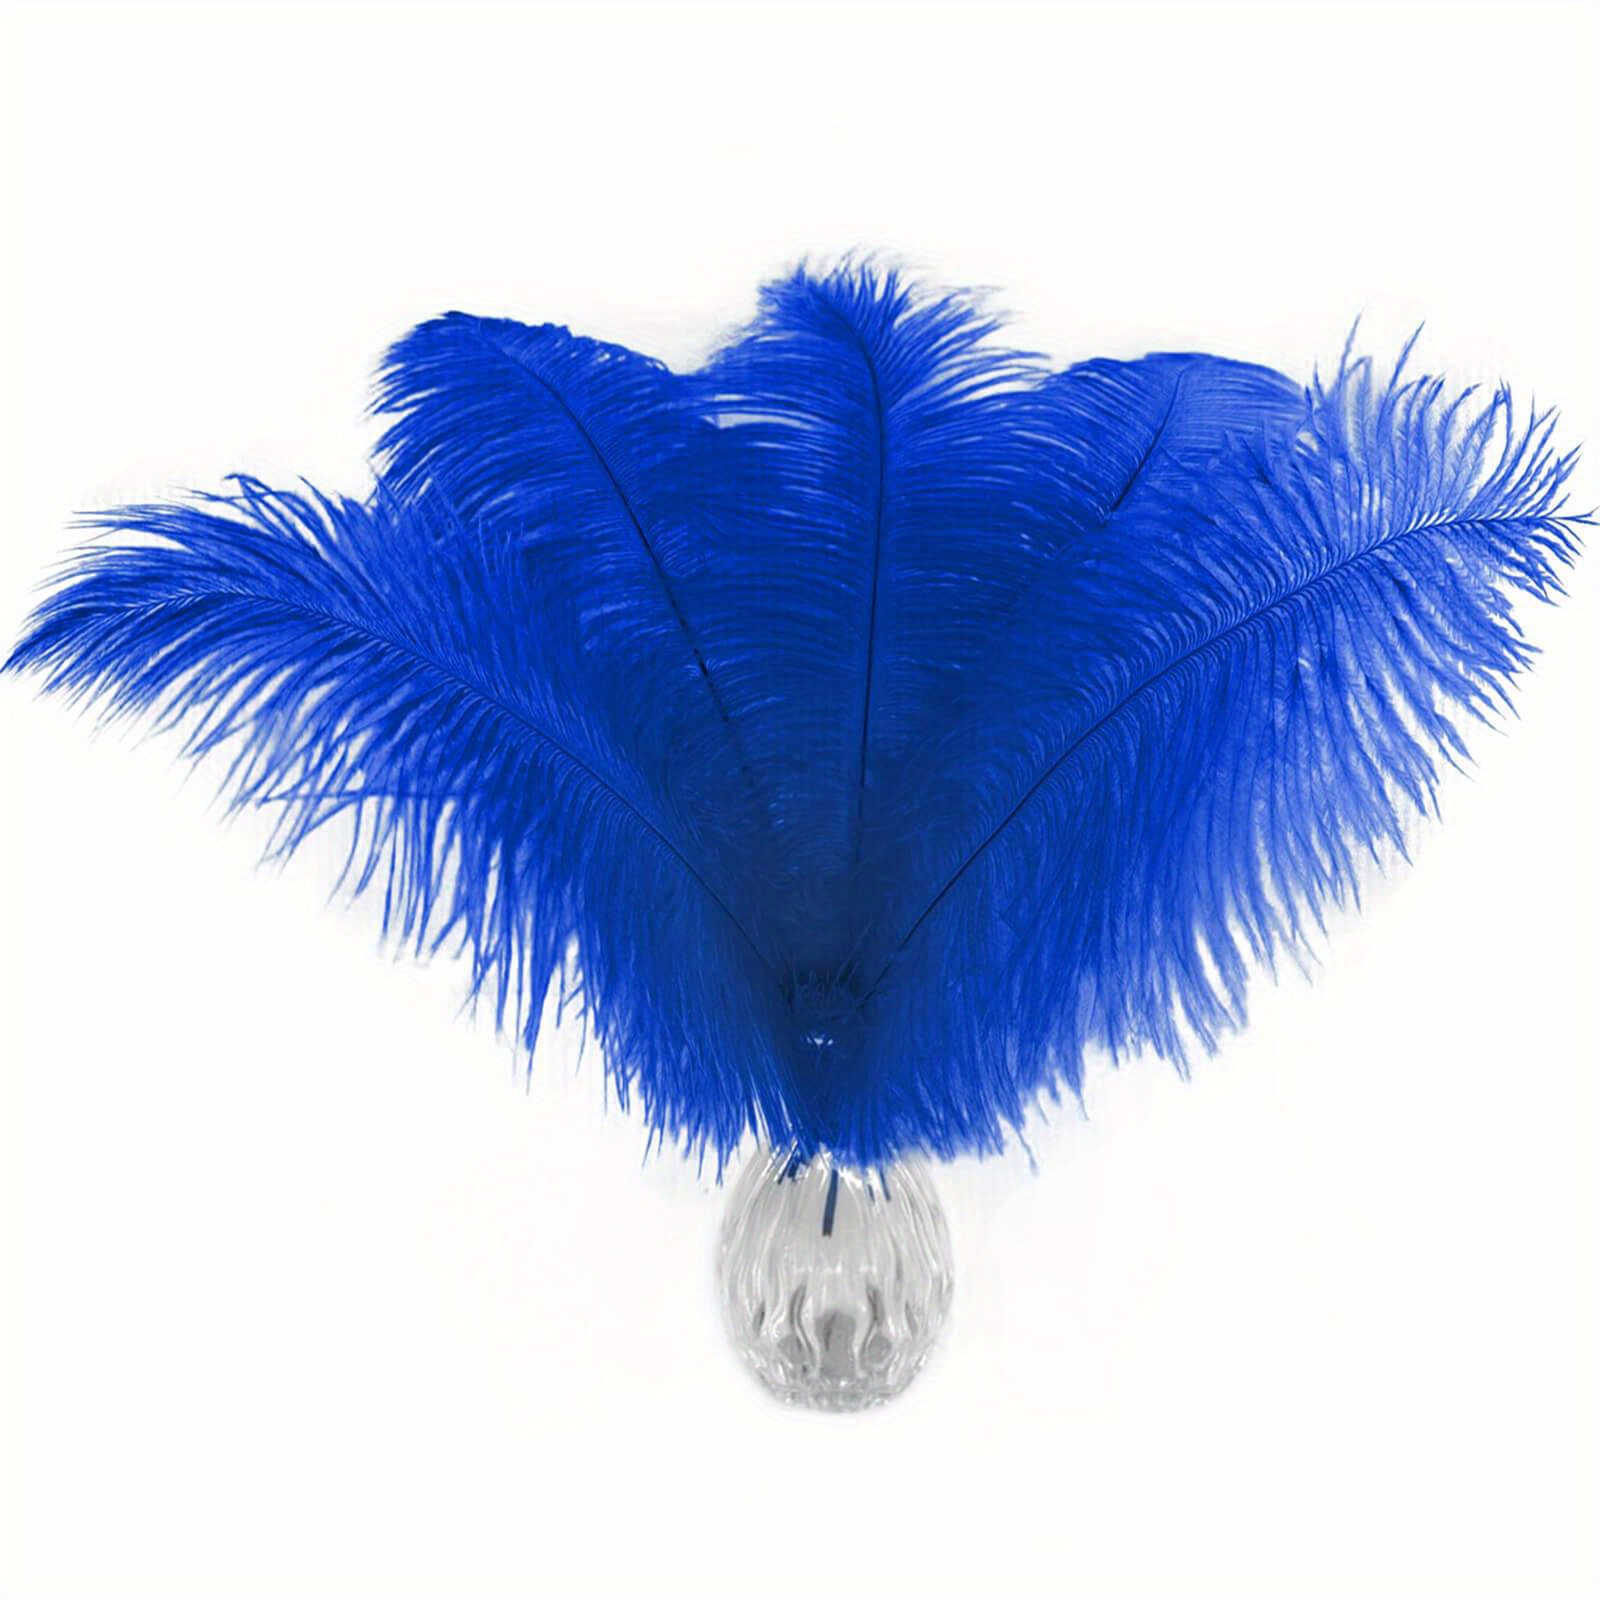 Ostrich Feathers 14-16 (10 pcs) - Royal Blue